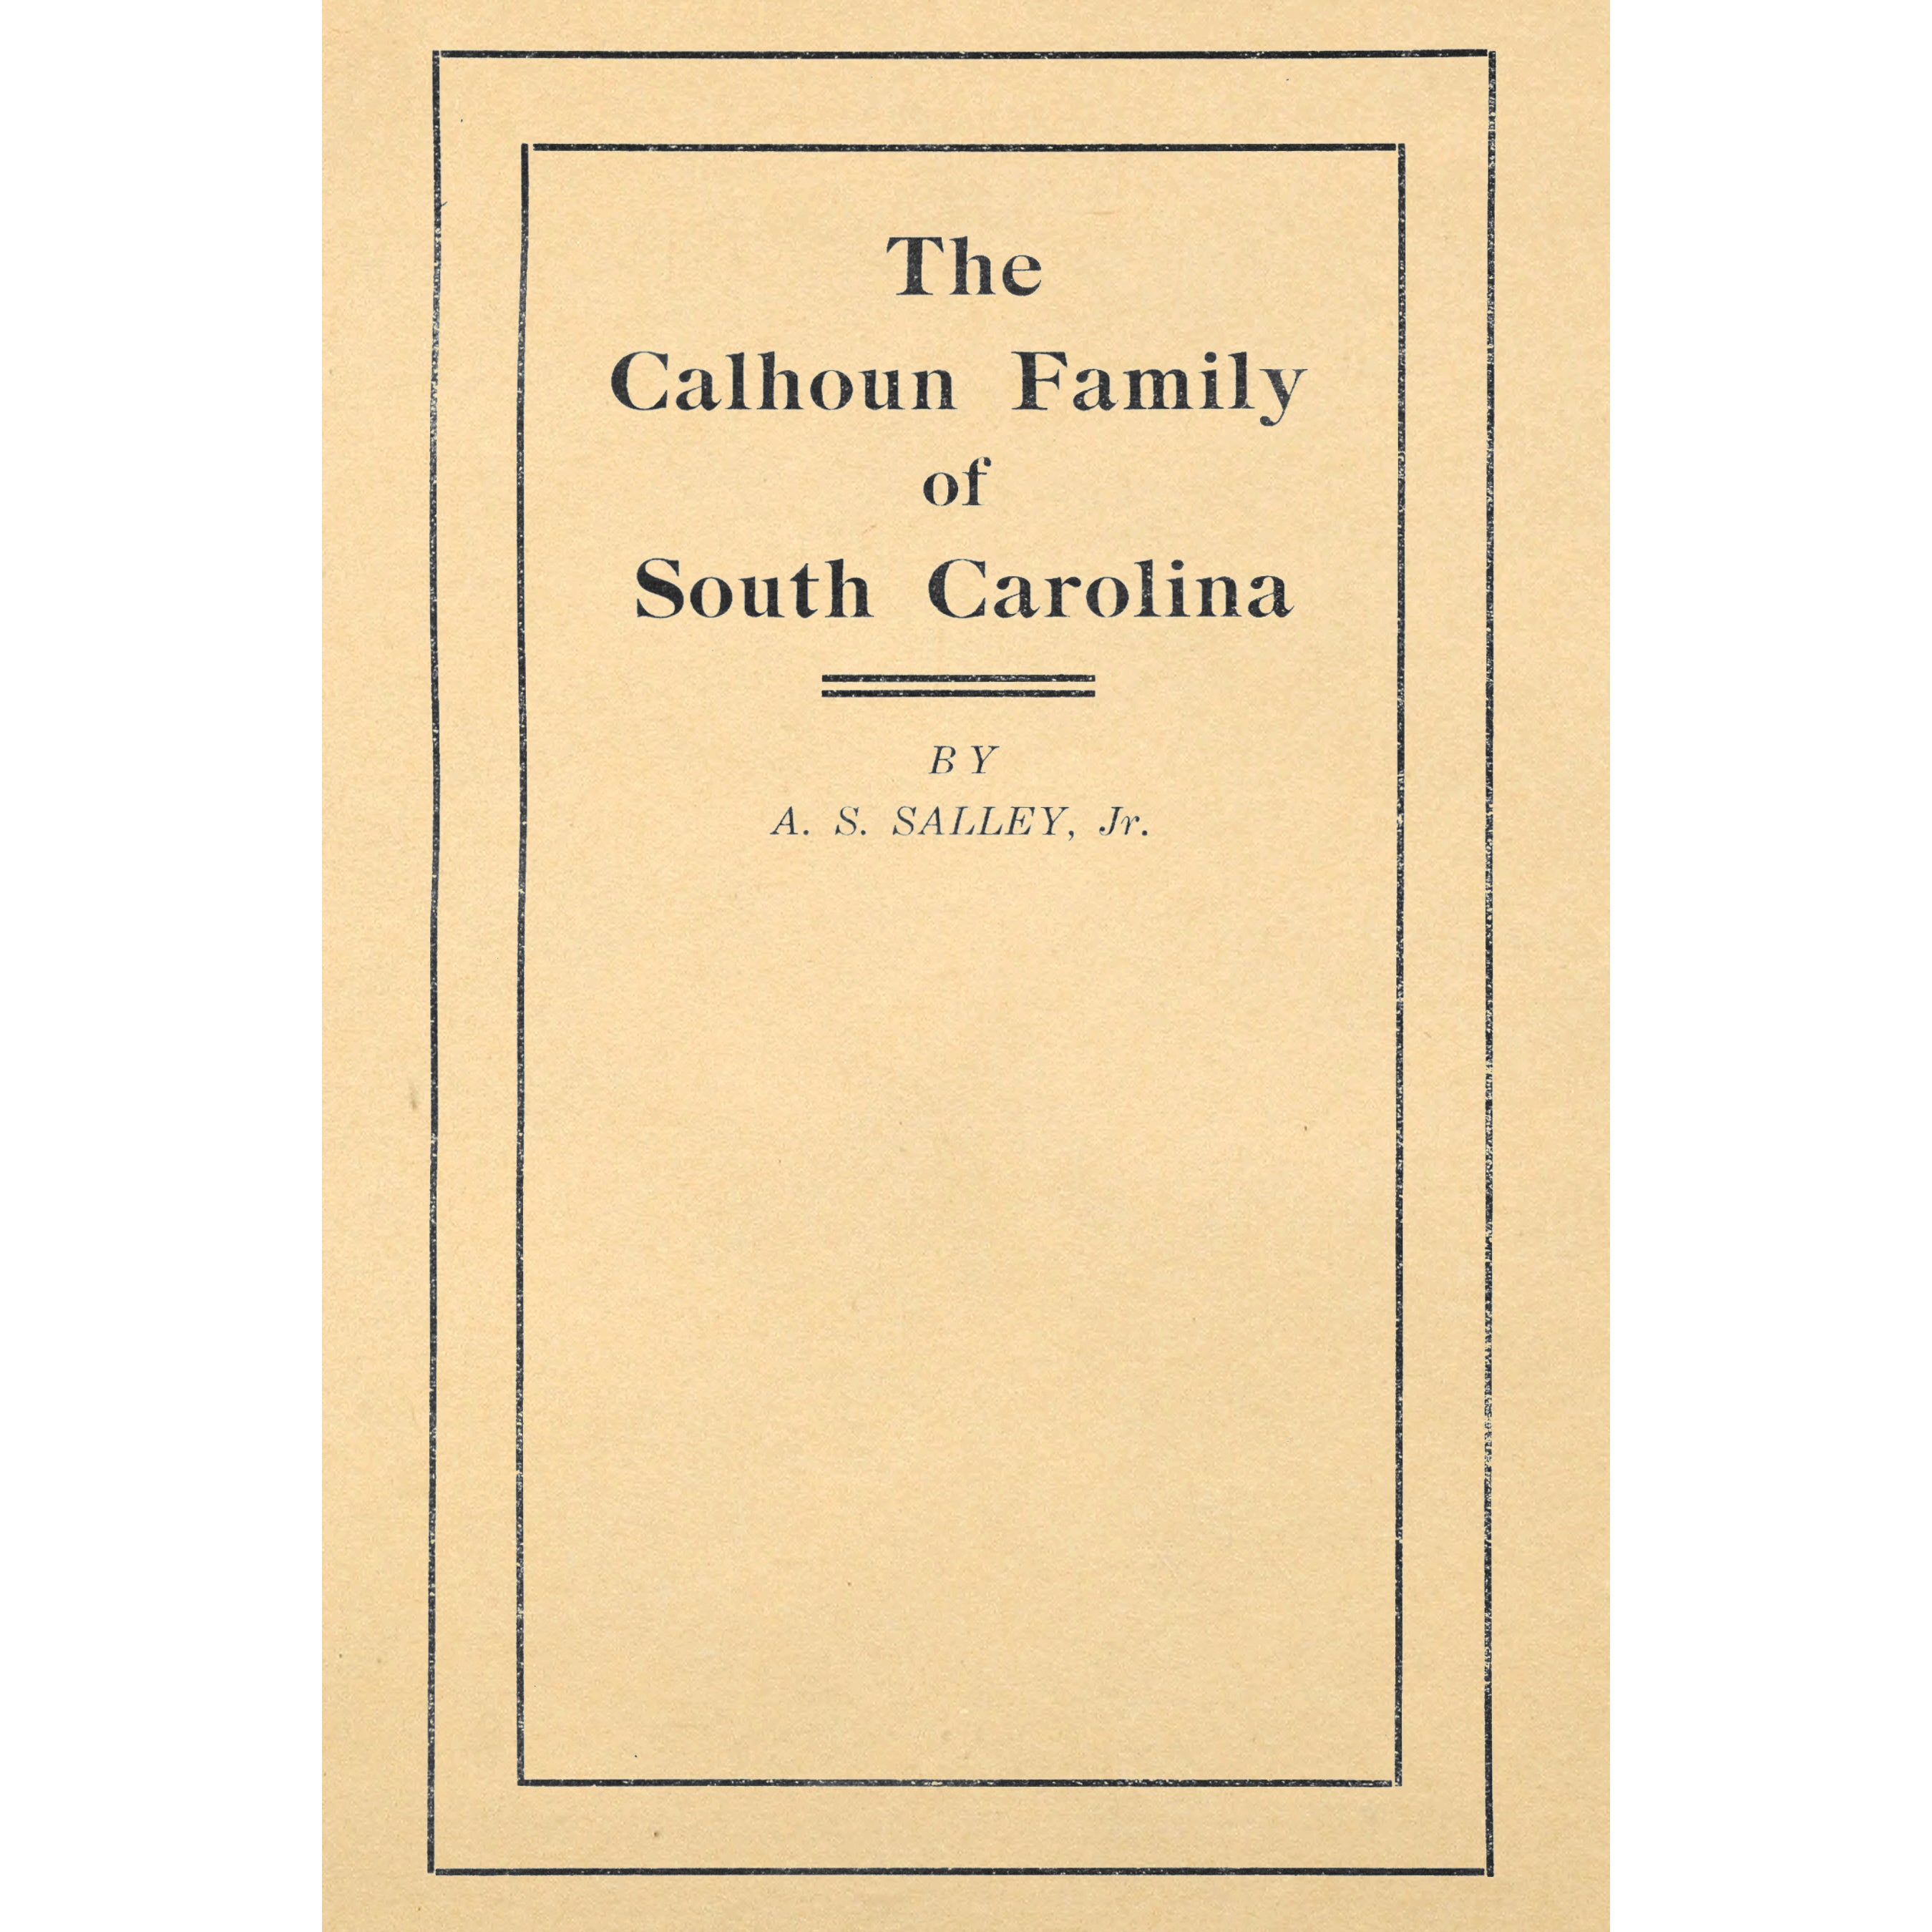 The Calhoun Family of South Carolina